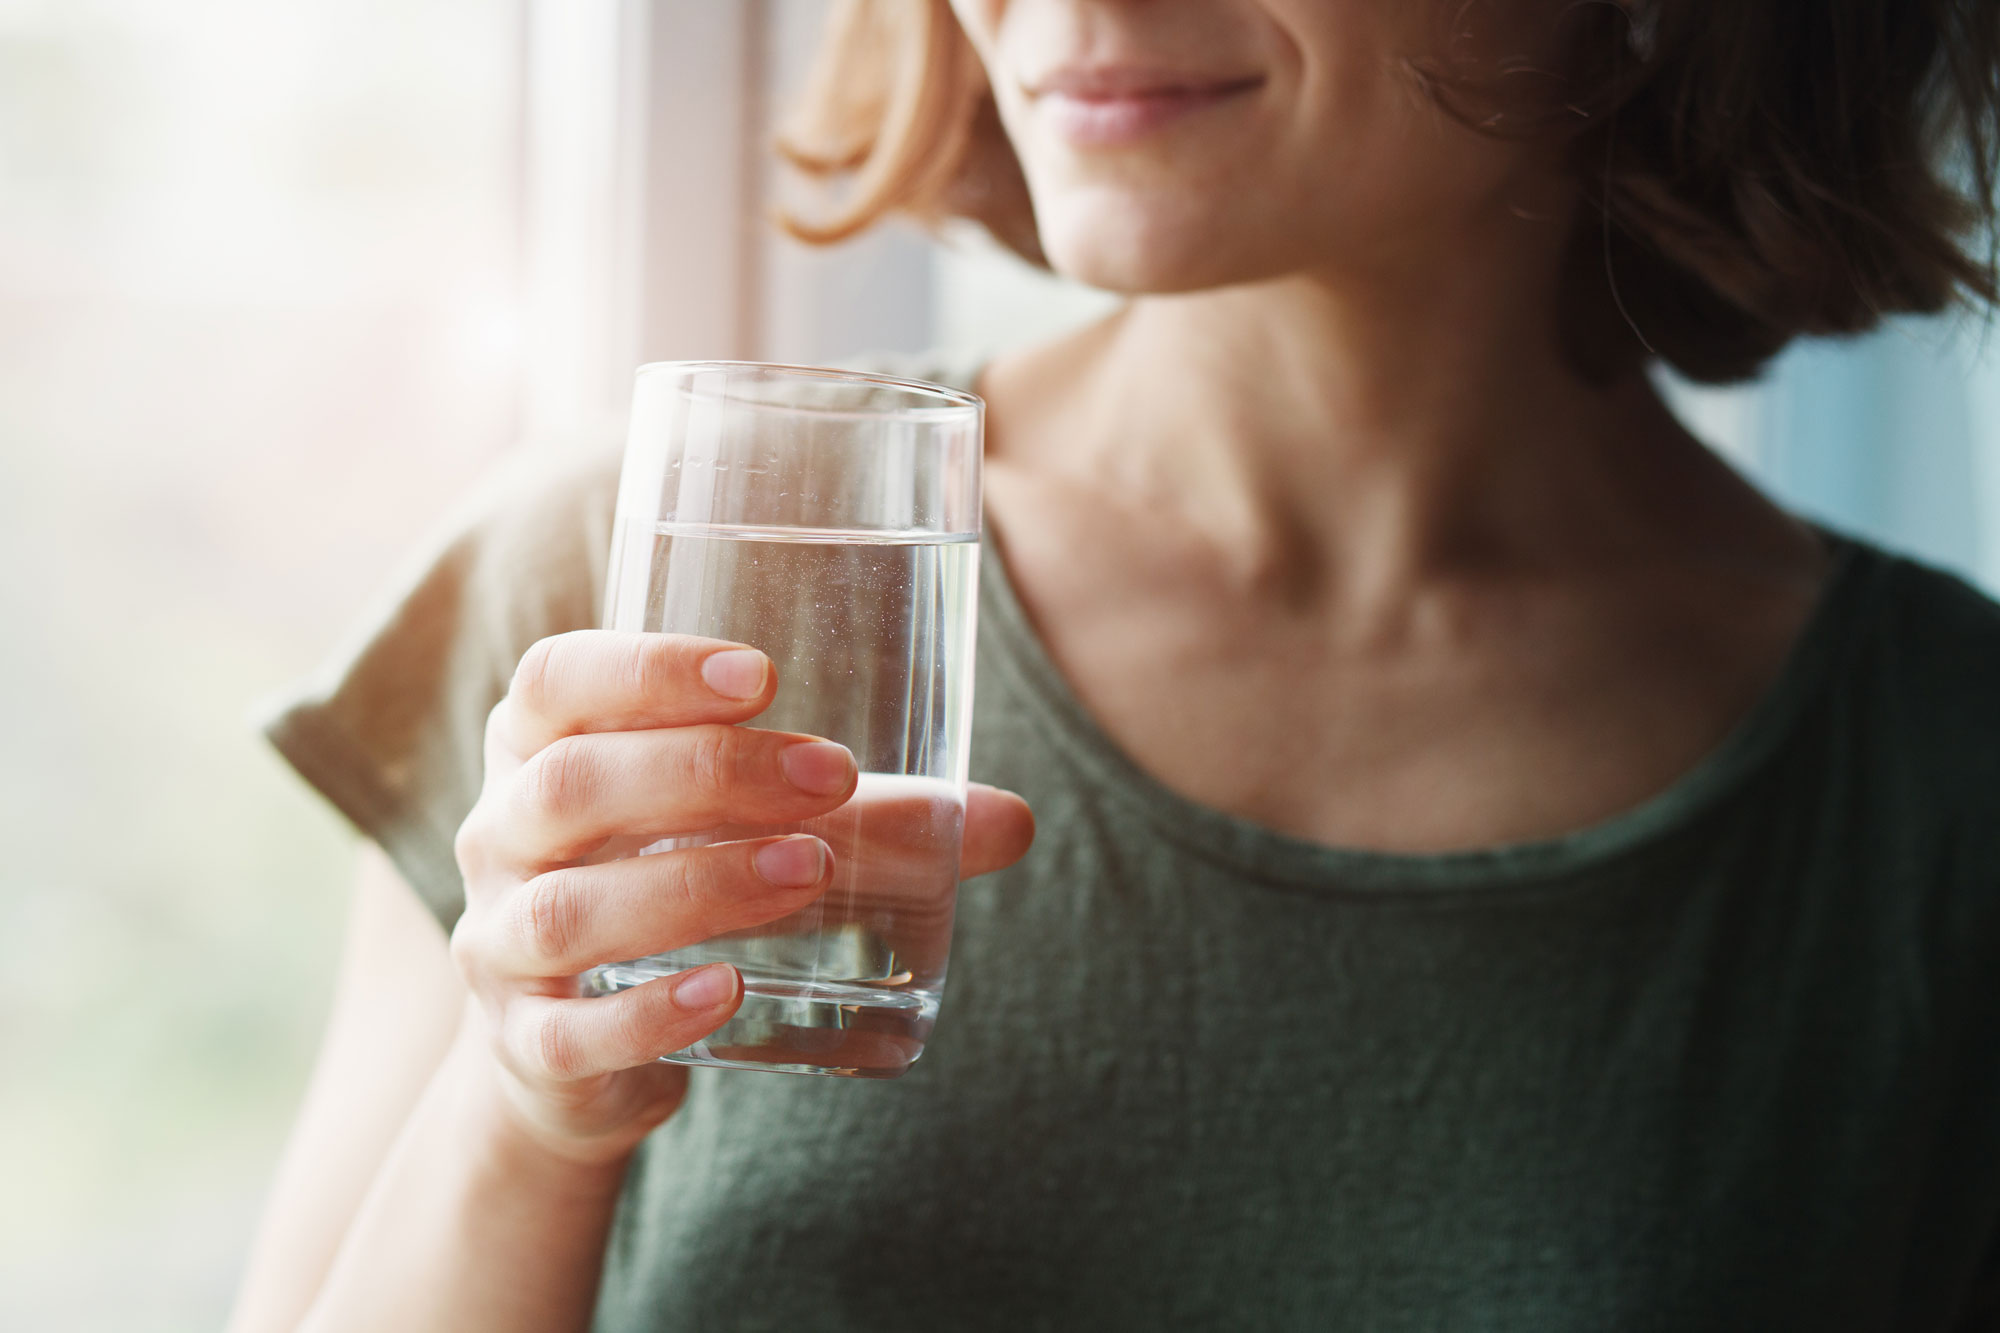 L’idratazione protegge dai disturbi gastrointestinali.